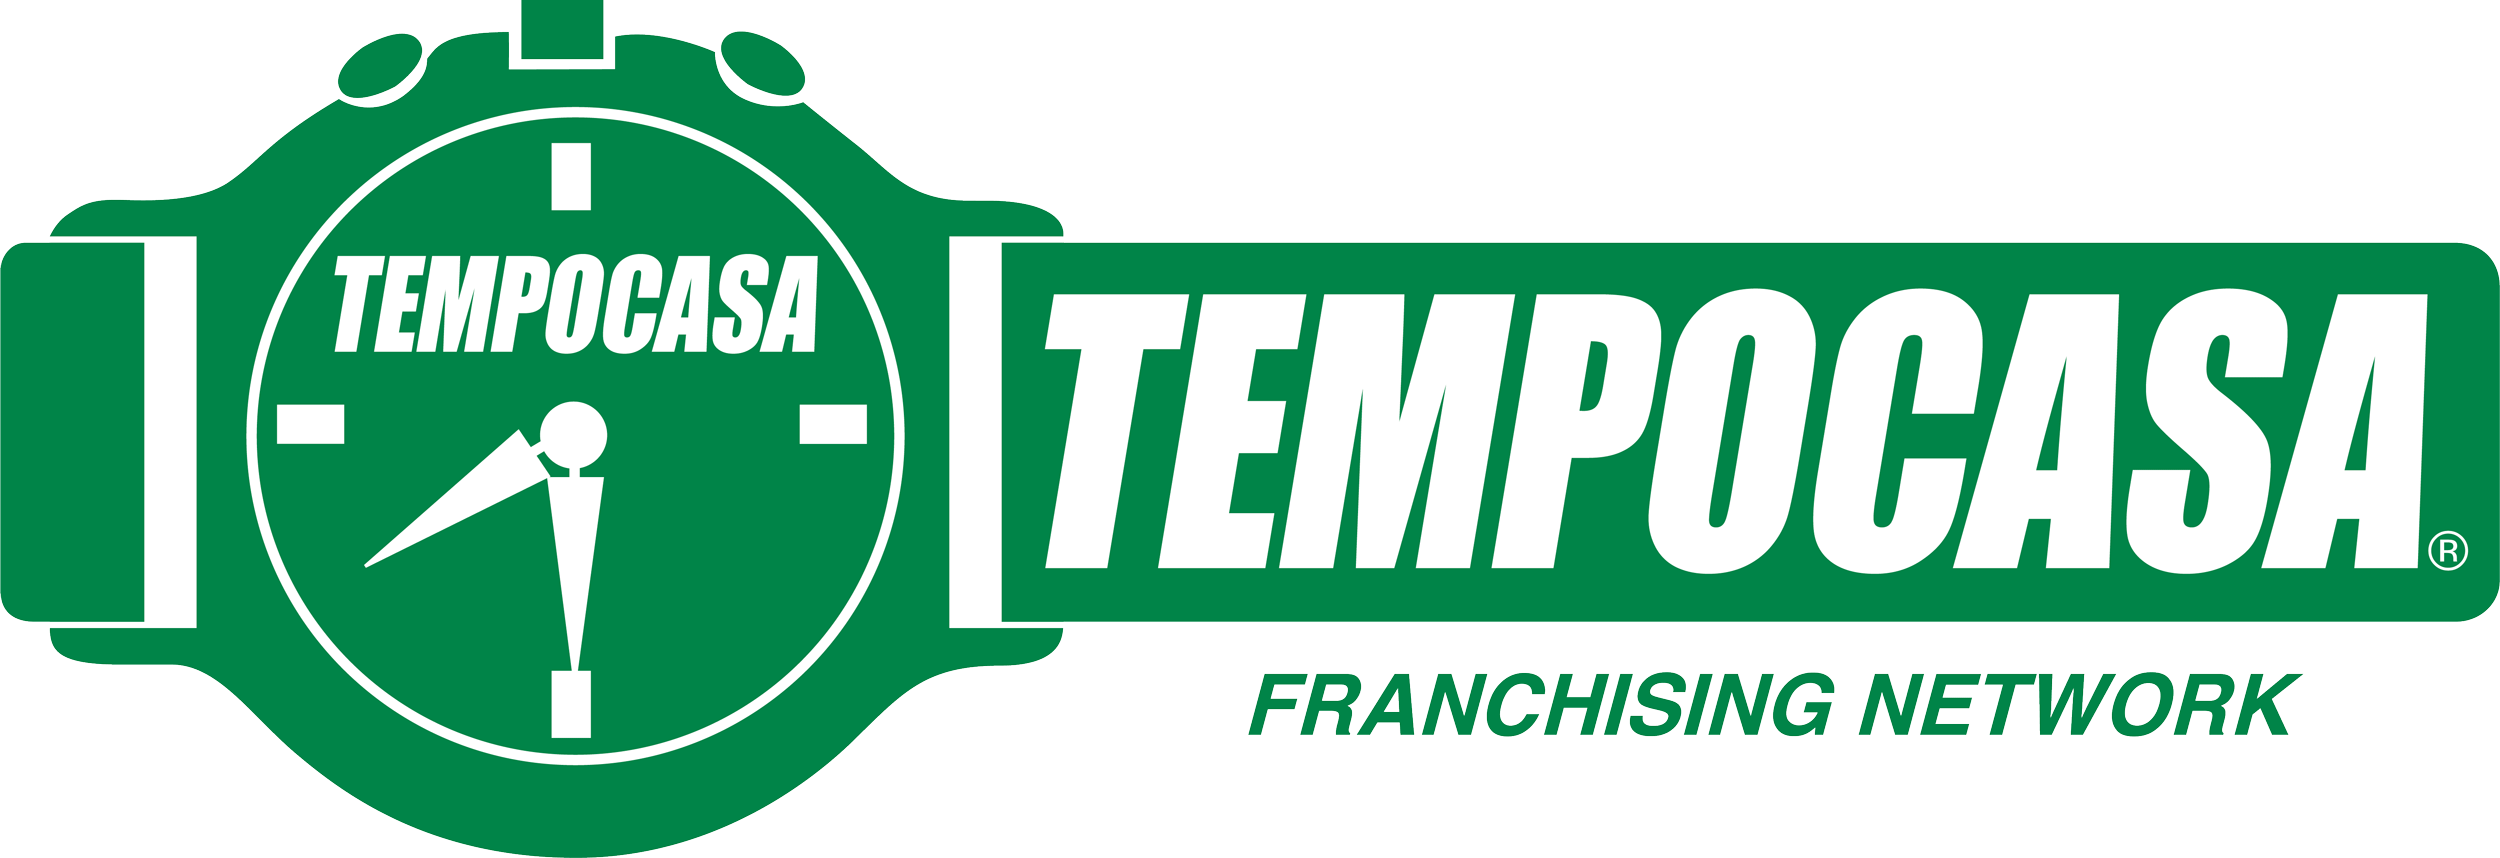 Milano - Sempione - Tempocasa